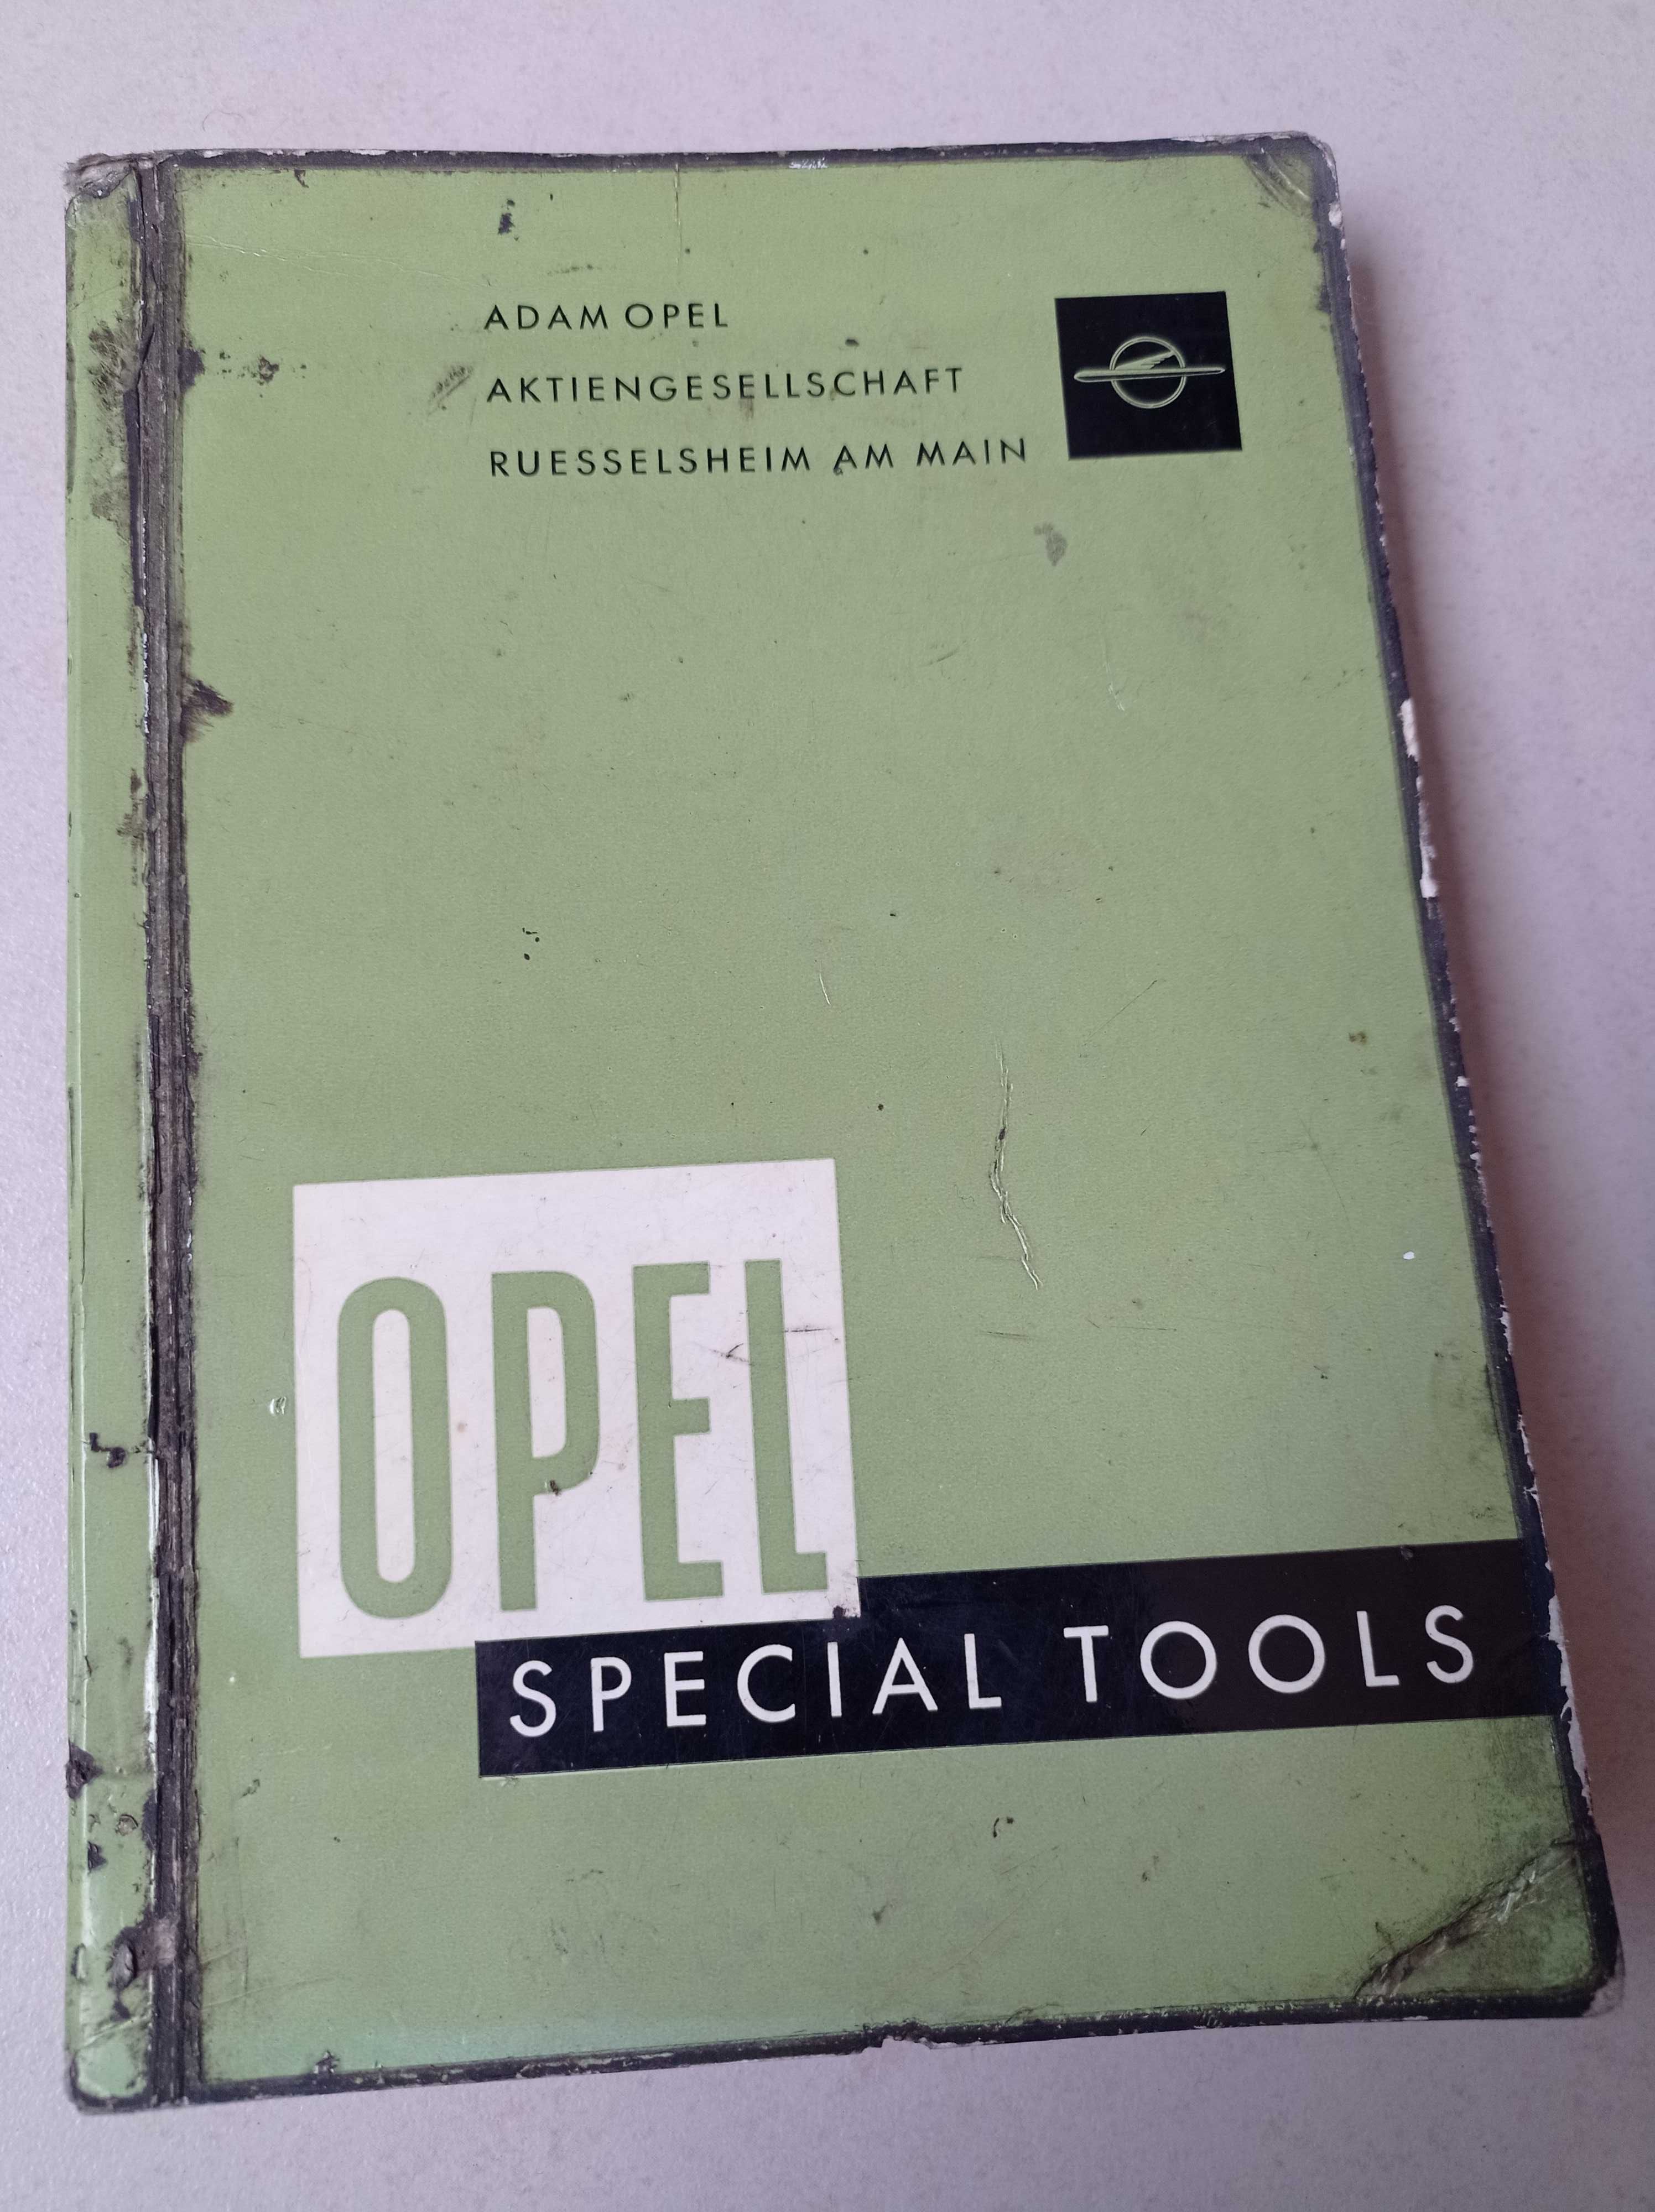 Manual reparações Opel Kaddet + Manual Opel Special Tools